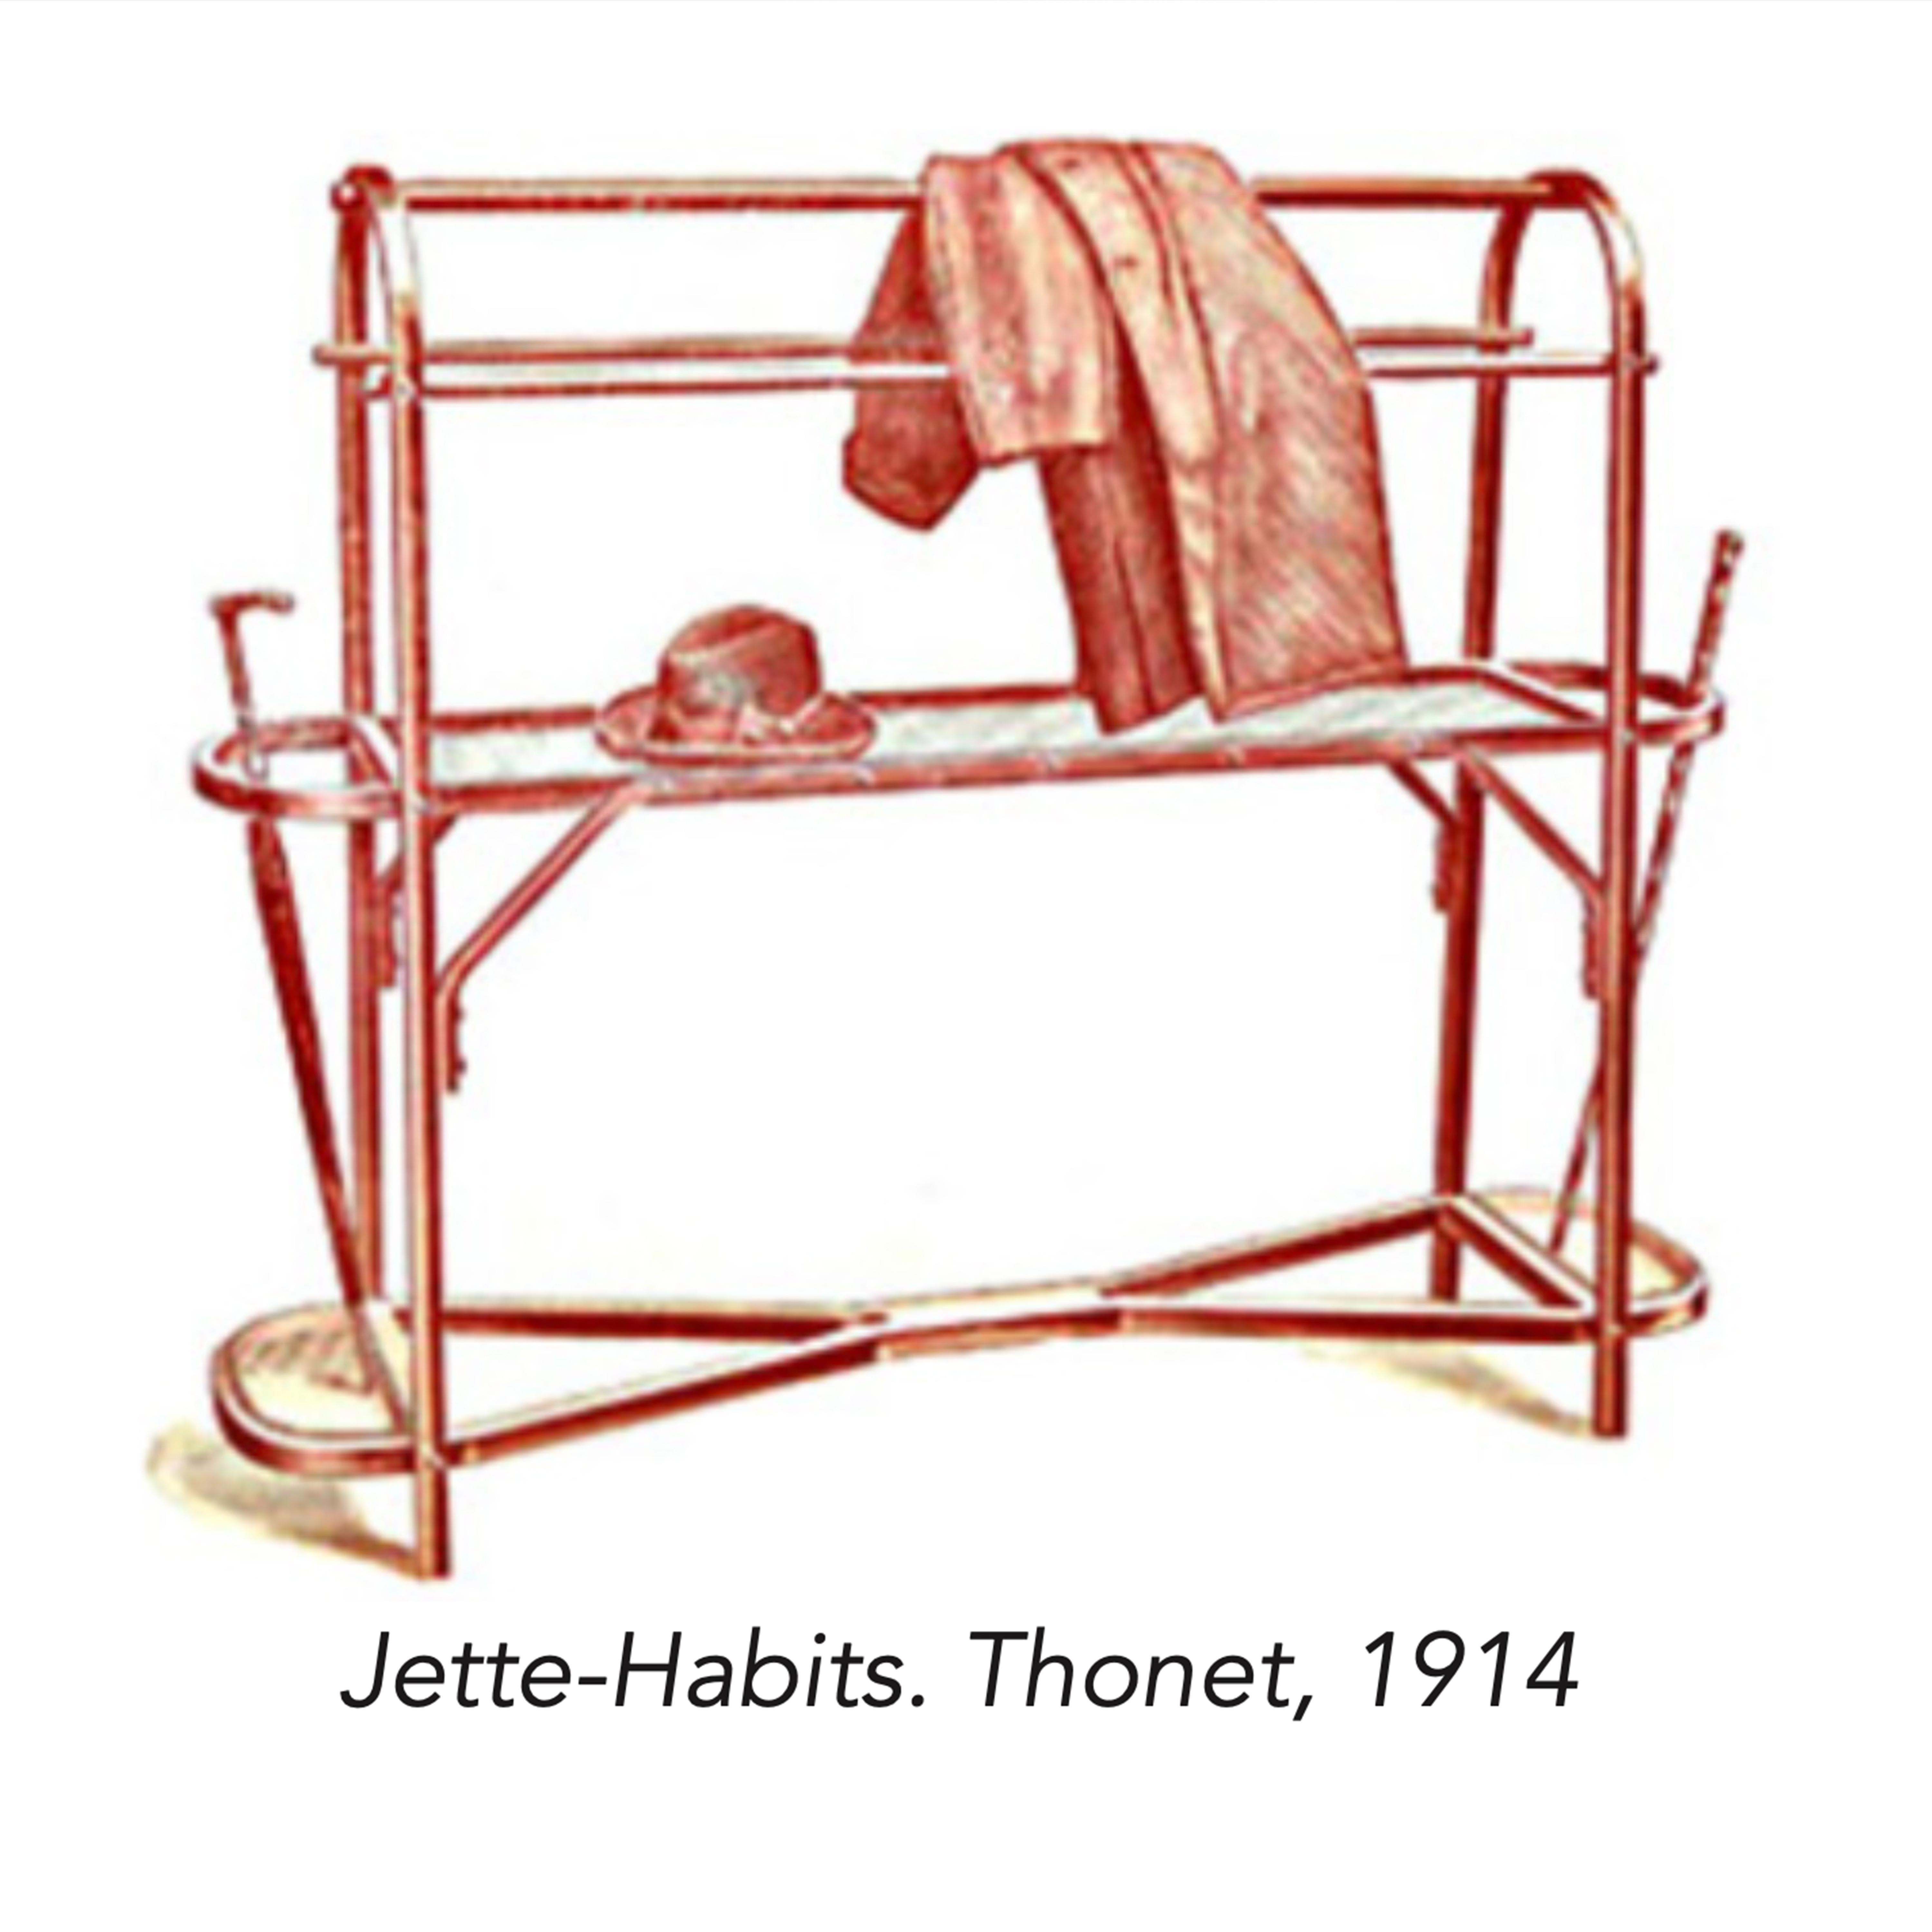 Jette-Habits / Porte Manteaux (Coat Rack, Hat Stand, Umbrella Rack) - ART DECO For Sale 2